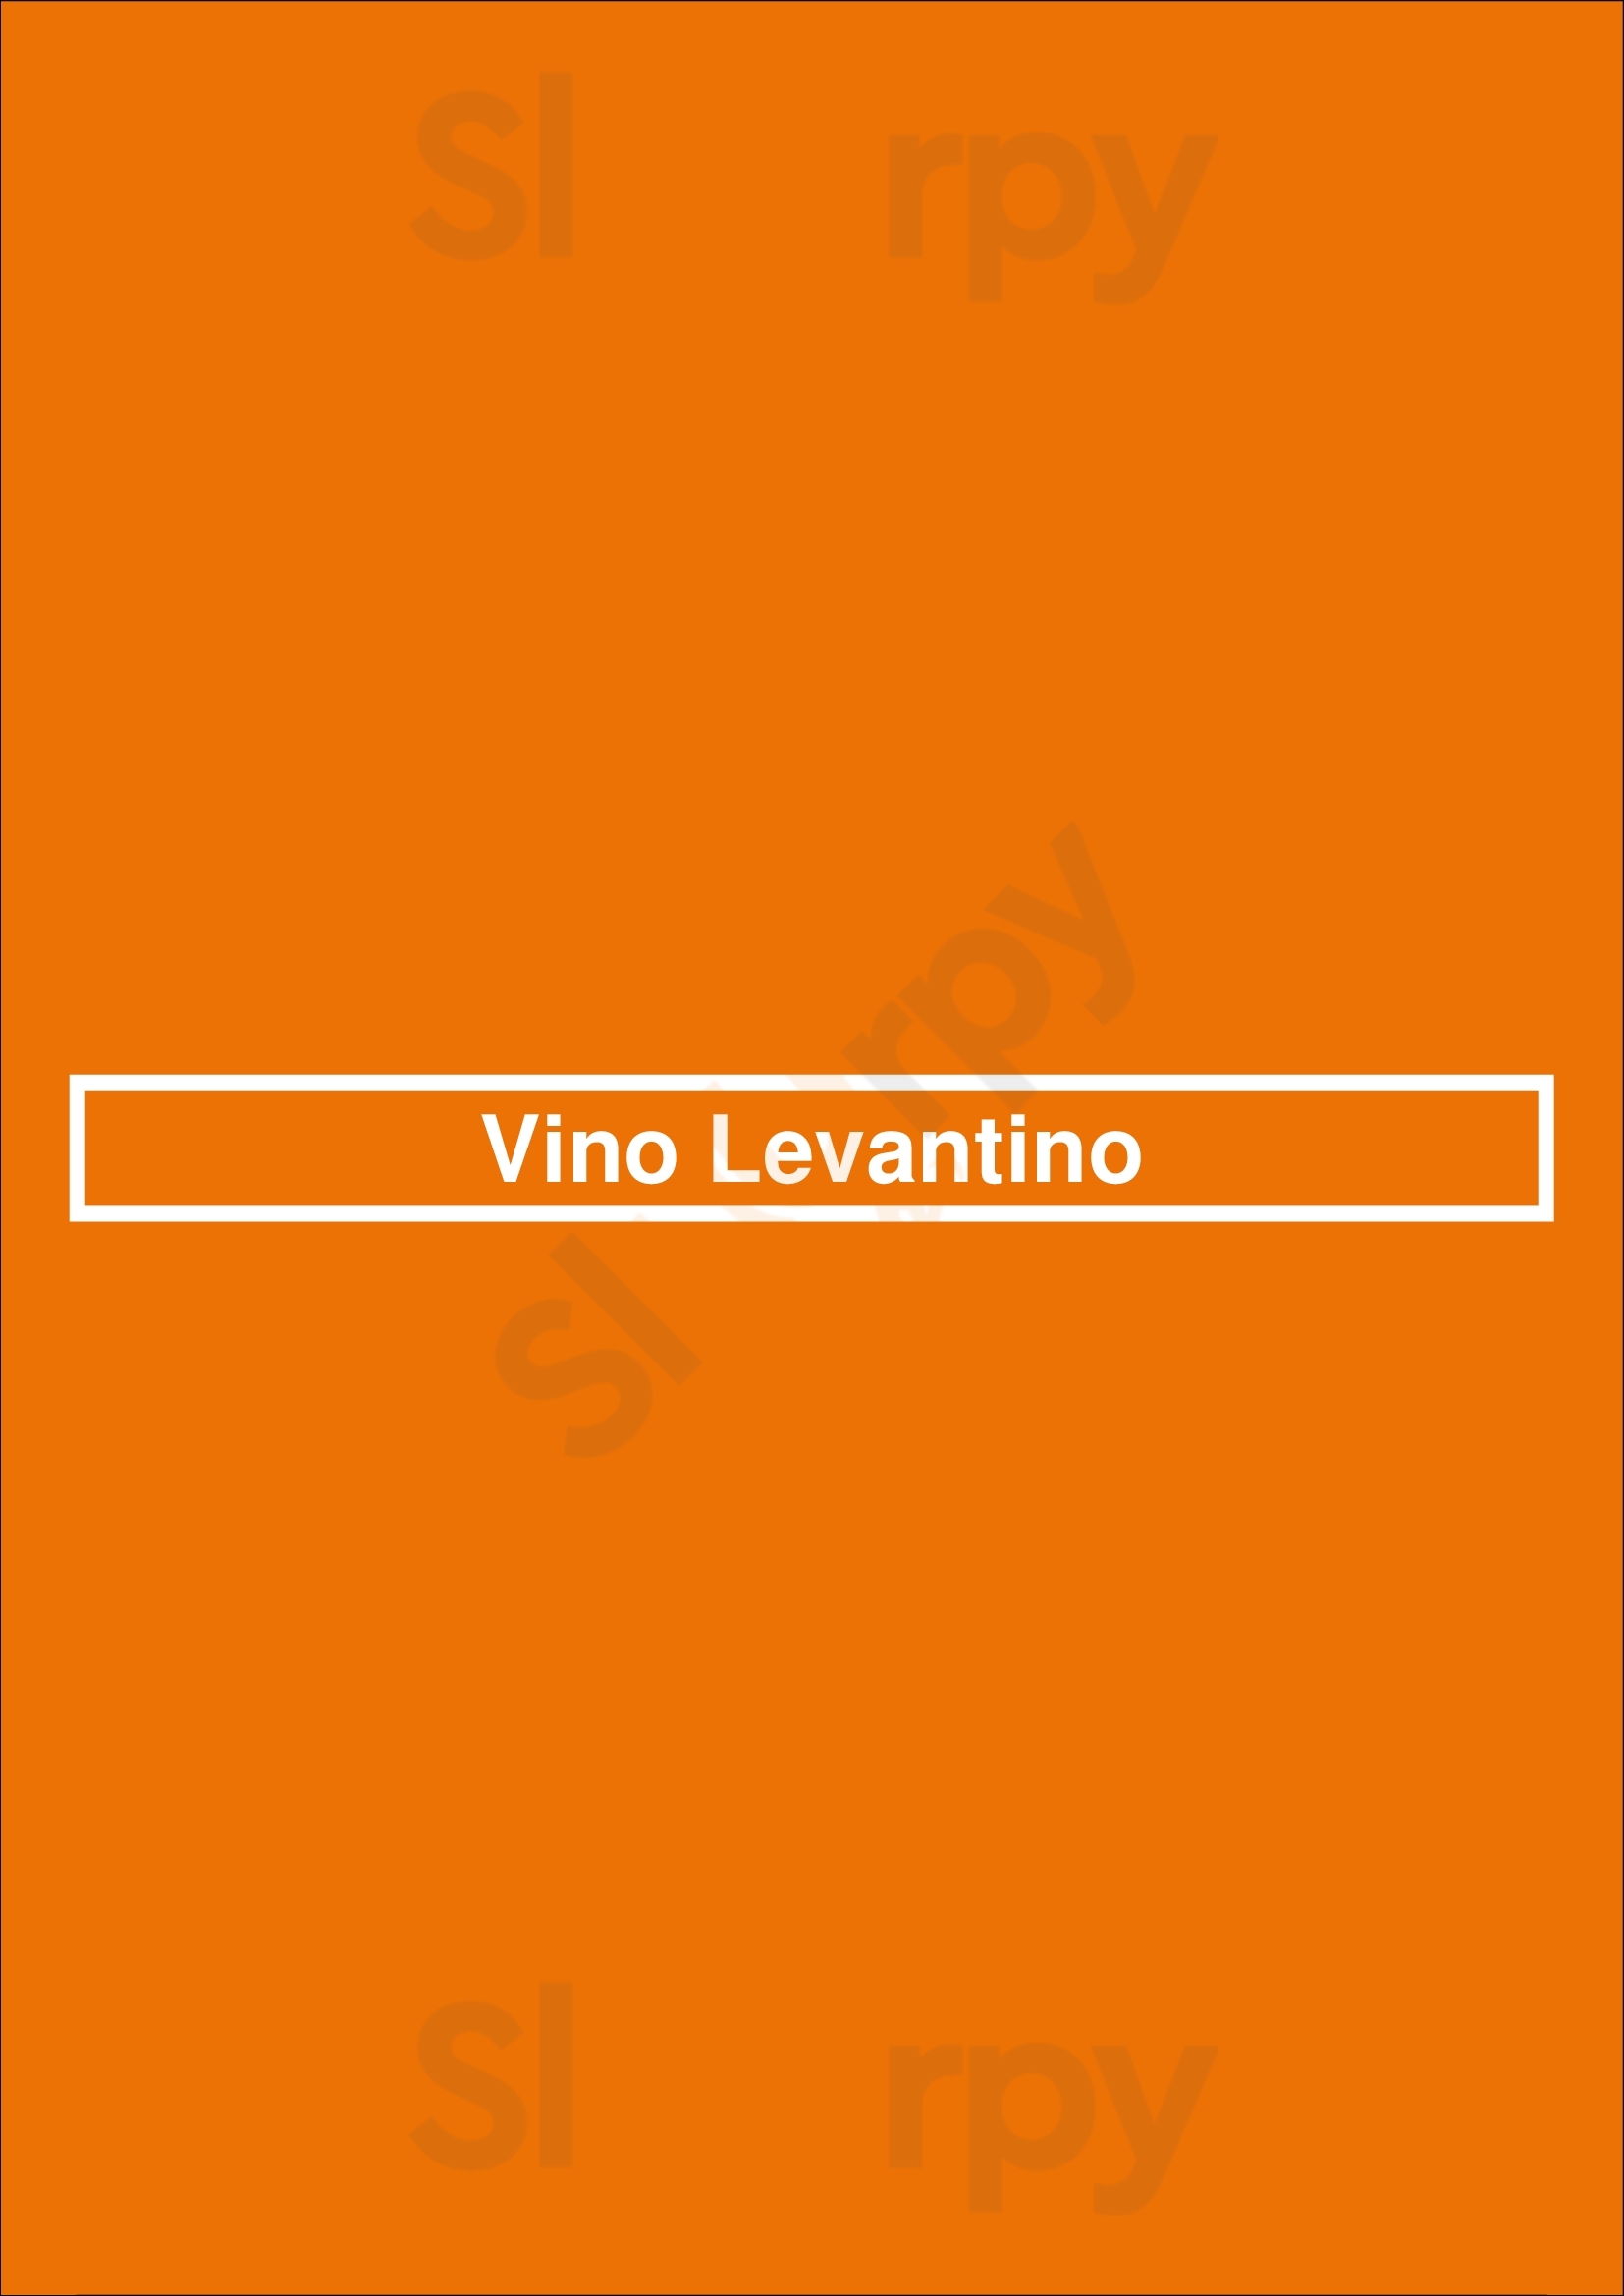 Vino Levantino New York City Menu - 1